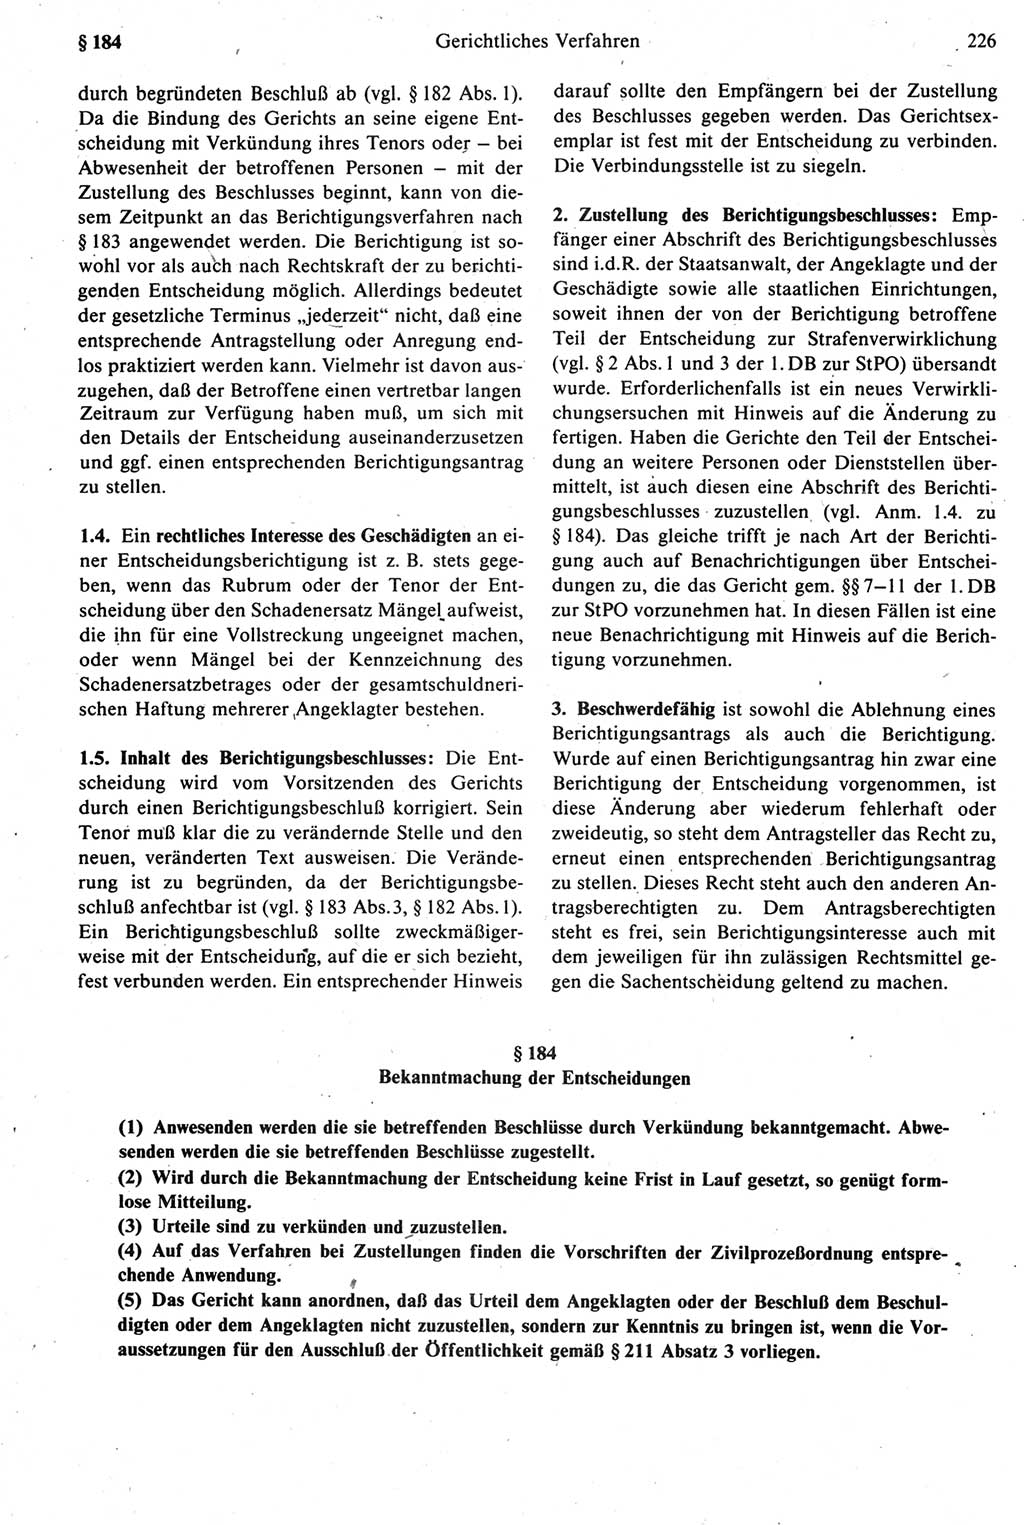 Strafprozeßrecht der DDR [Deutsche Demokratische Republik], Kommentar zur Strafprozeßordnung (StPO) 1987, Seite 226 (Strafprozeßr. DDR Komm. StPO 1987, S. 226)